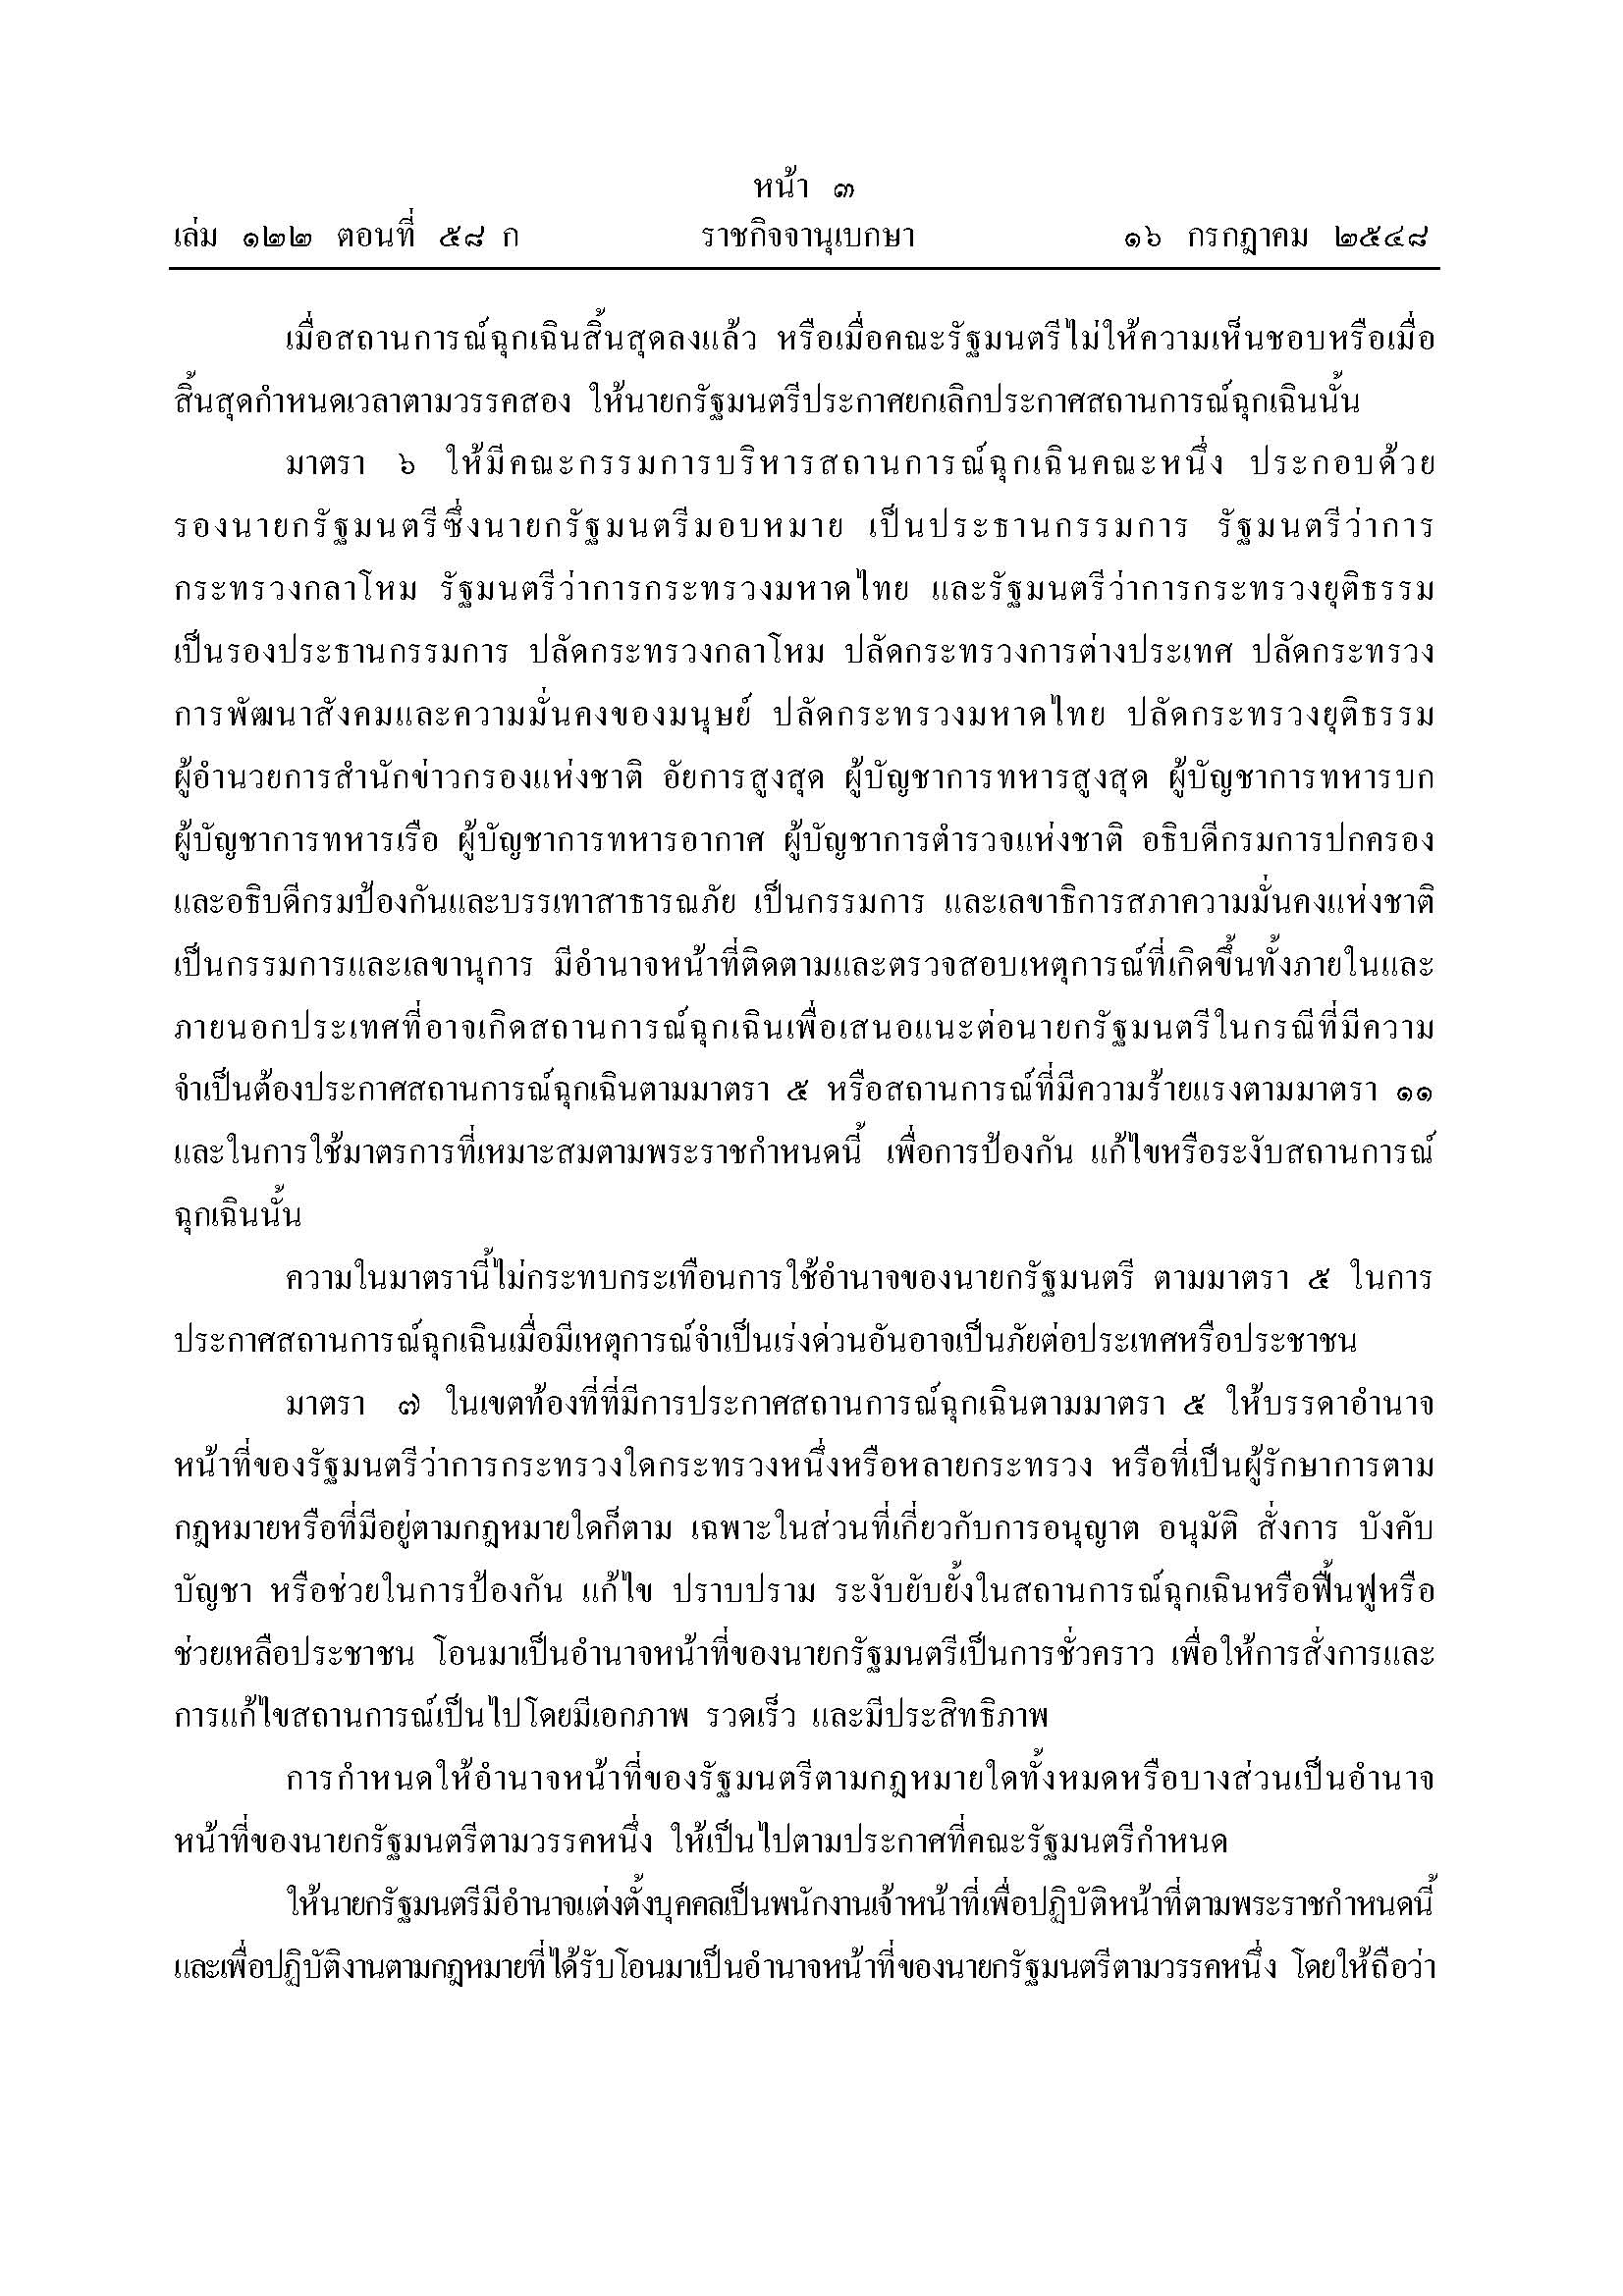 พรก-ฉุกเฉิน-58-01_Page_3